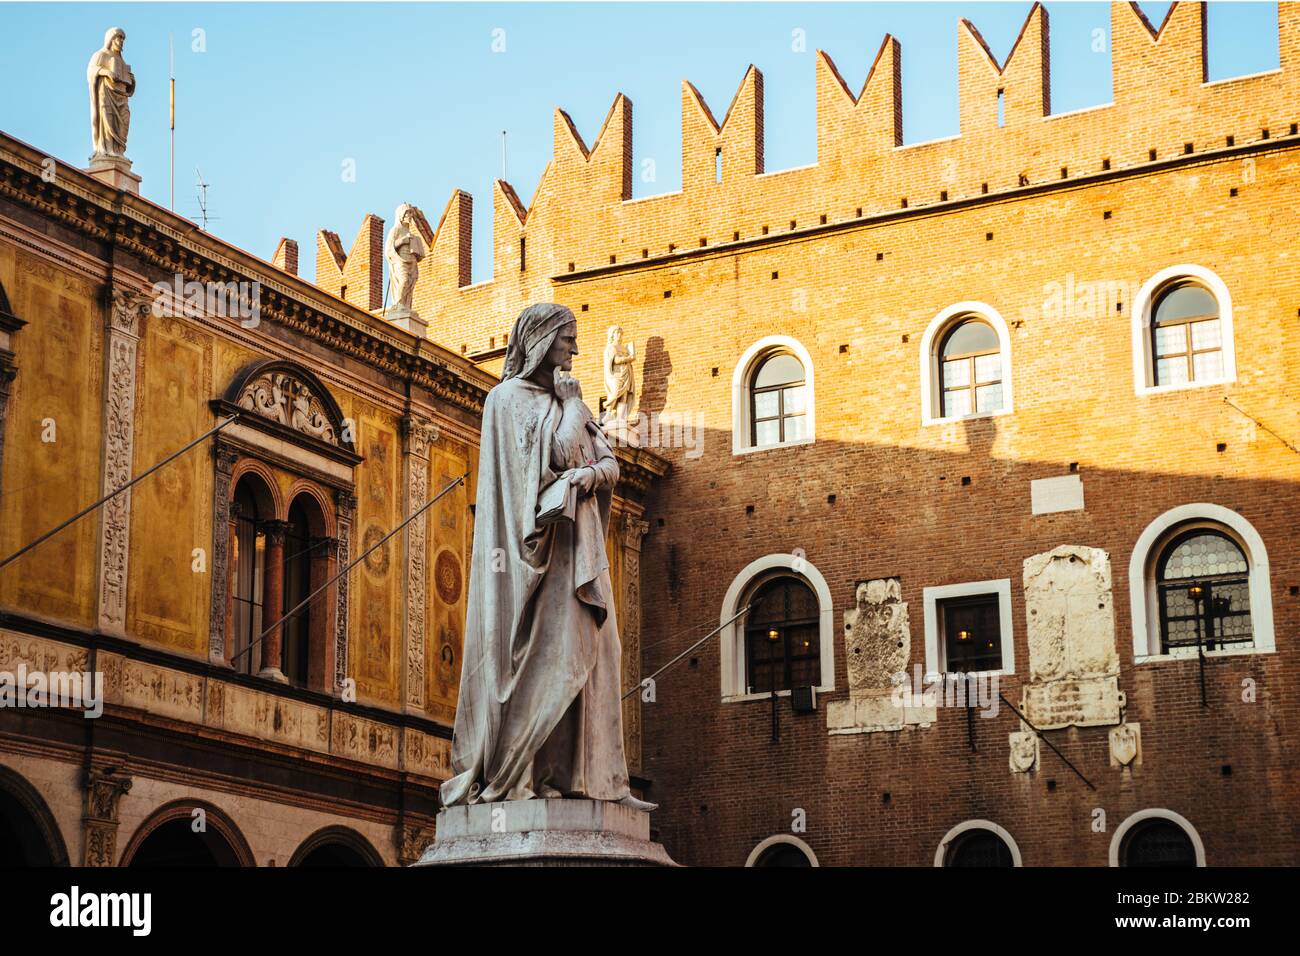 Sculpture of Dante Alighieri in a famous square of Verona Piazza dei Signori Stock Photo